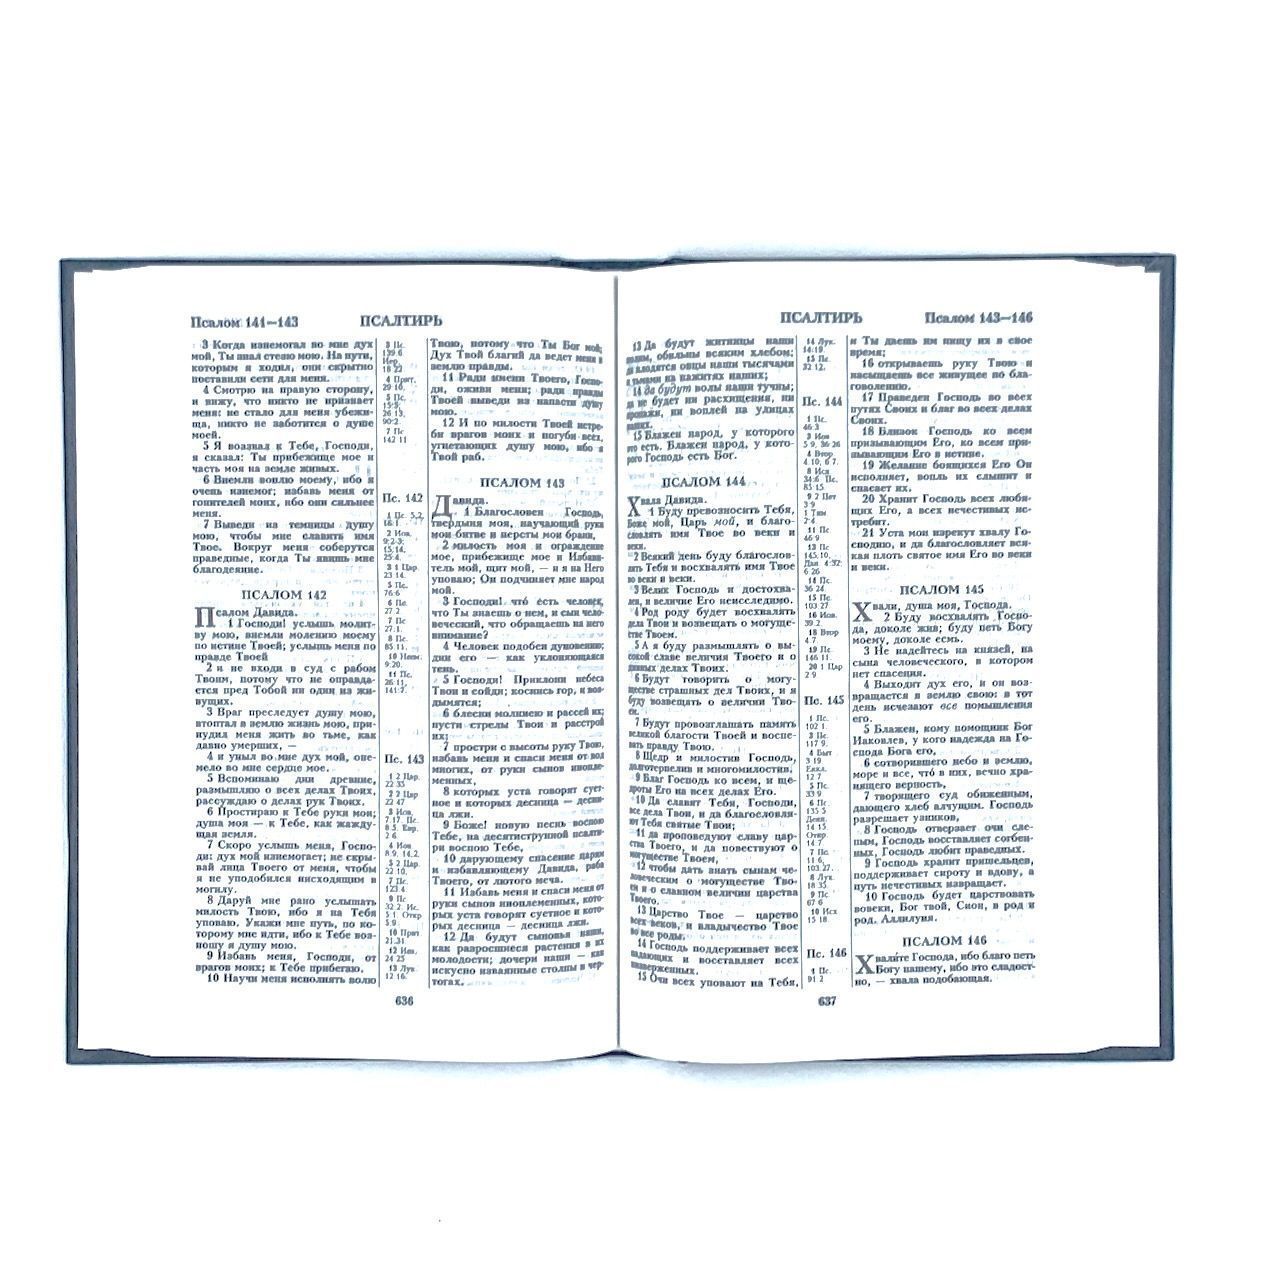 Библия 055 твердый переплет, цвет черный, надпись "Библия", средний формат, 140*215 мм, параллельные места по центру страницы, белые страницы, крупный шриф